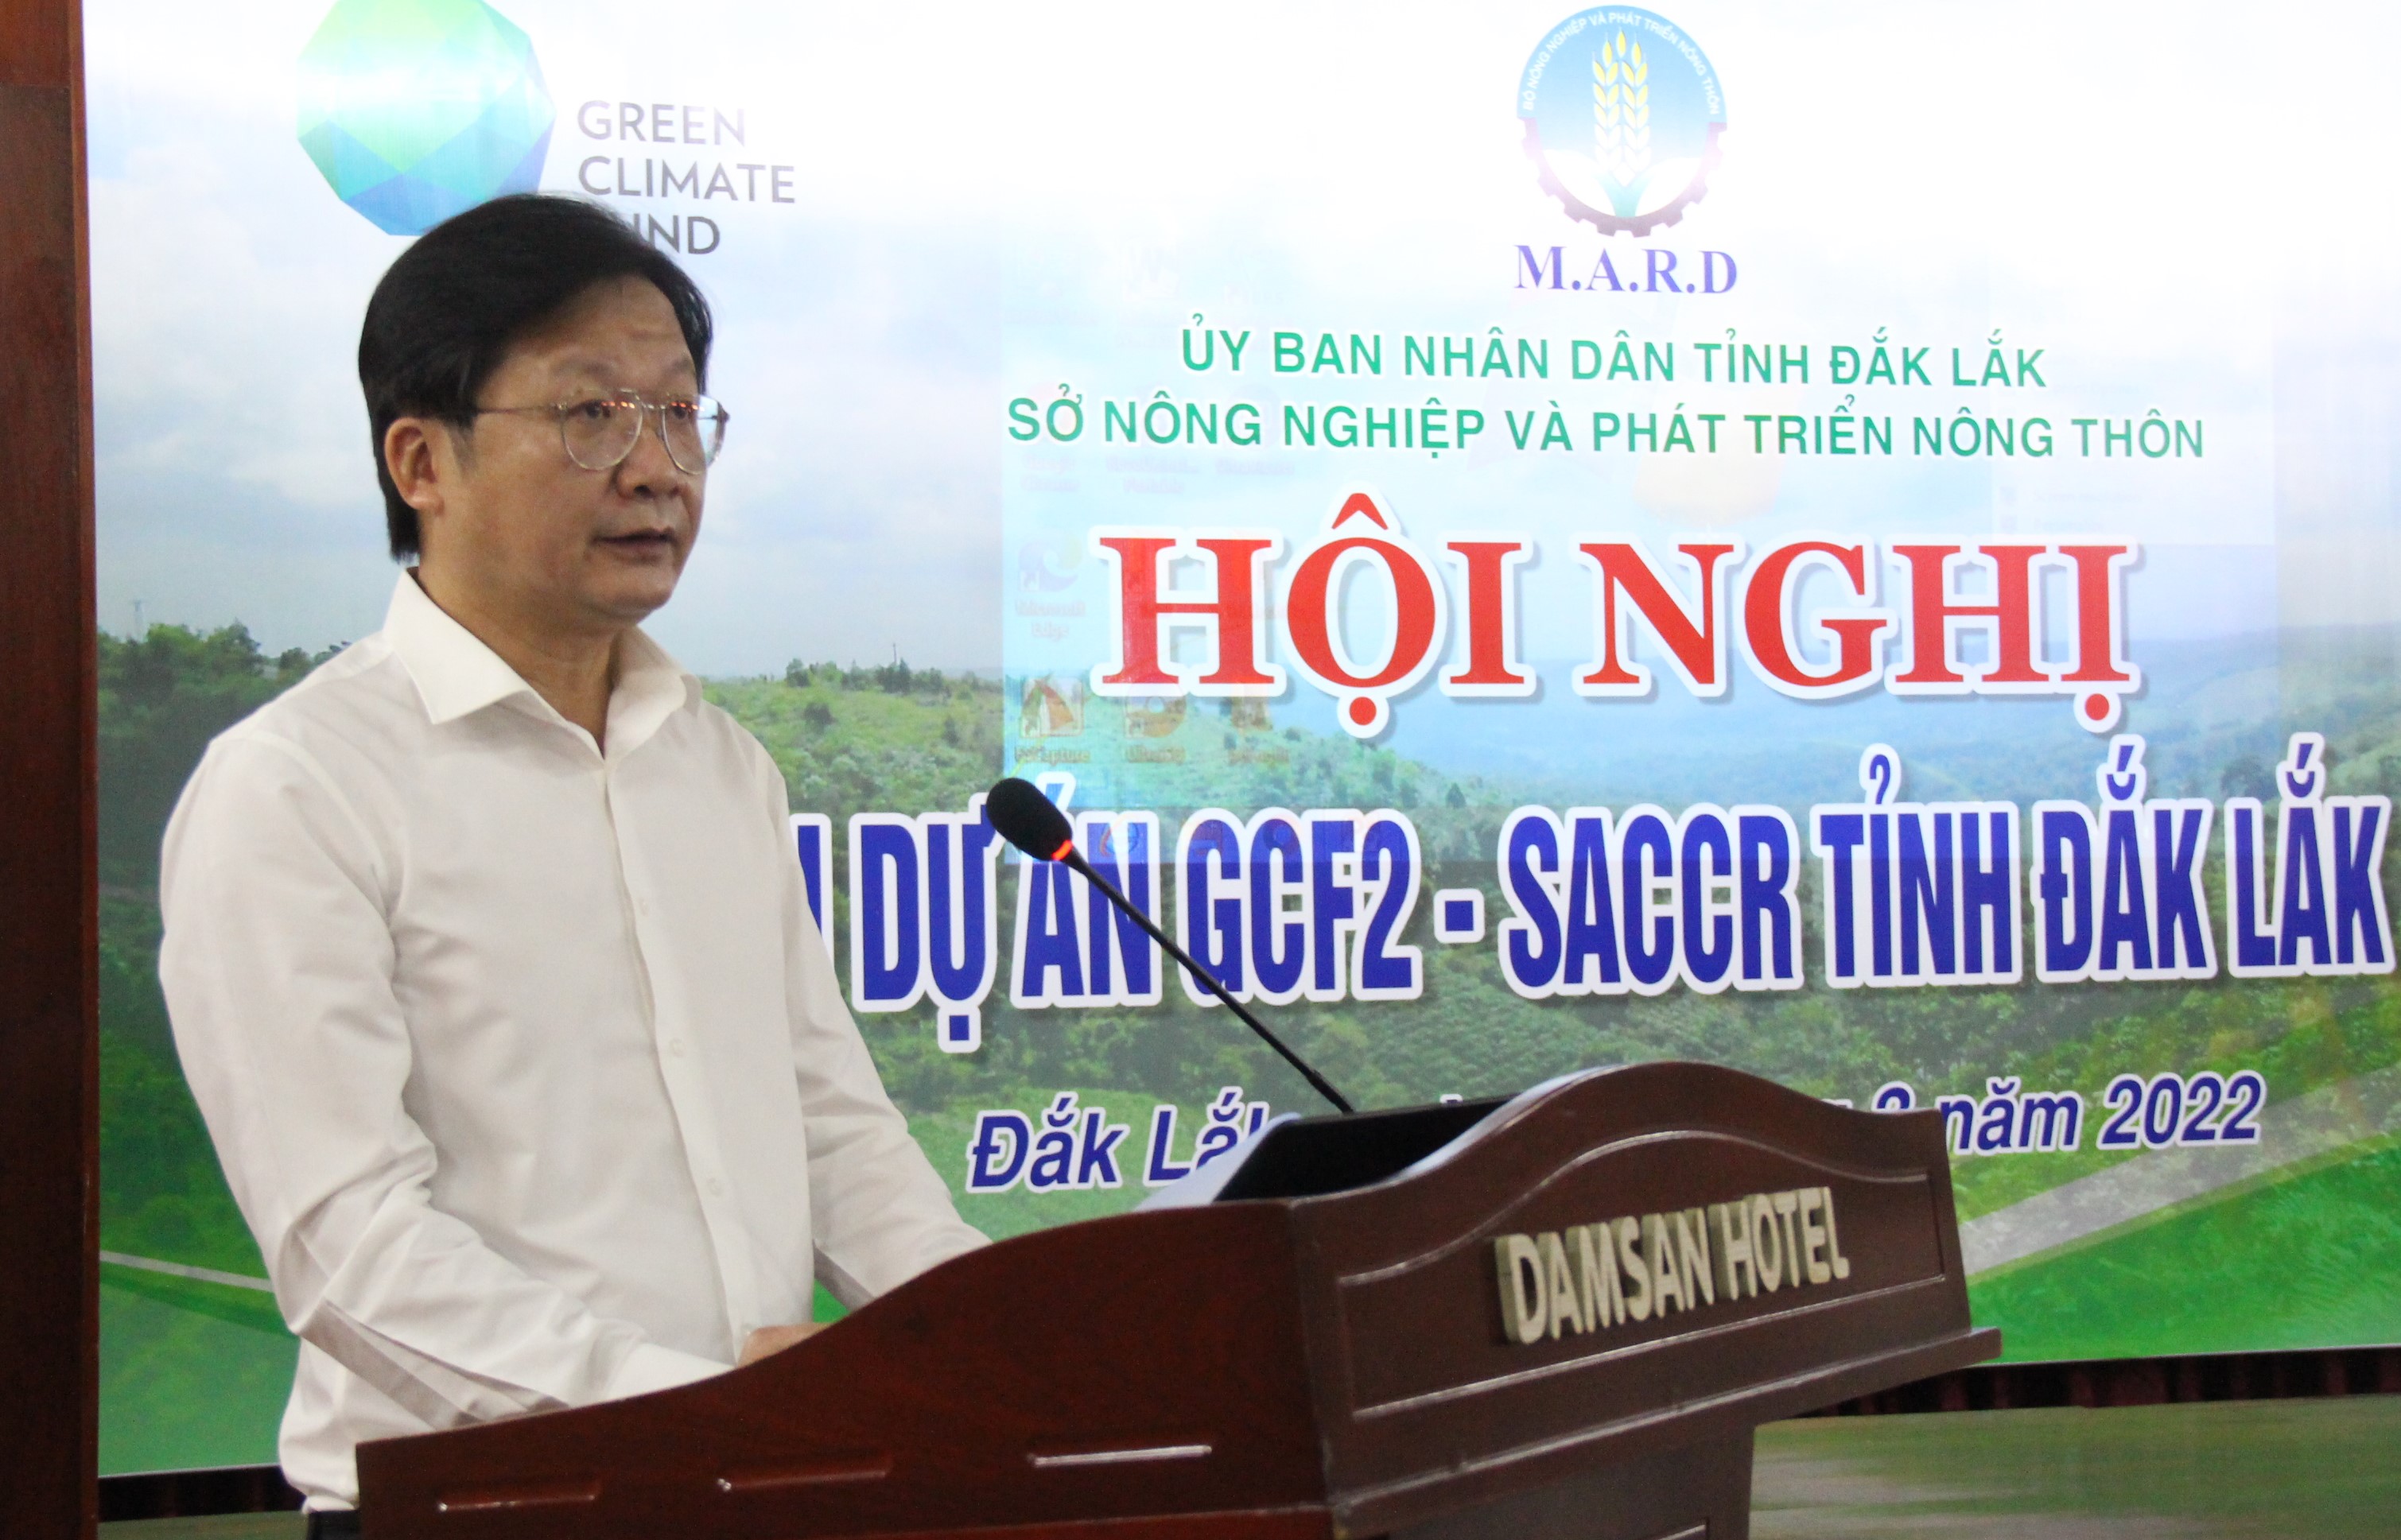 Triển khai dự án SACCR tỉnh Đắk Lắk năm 2022